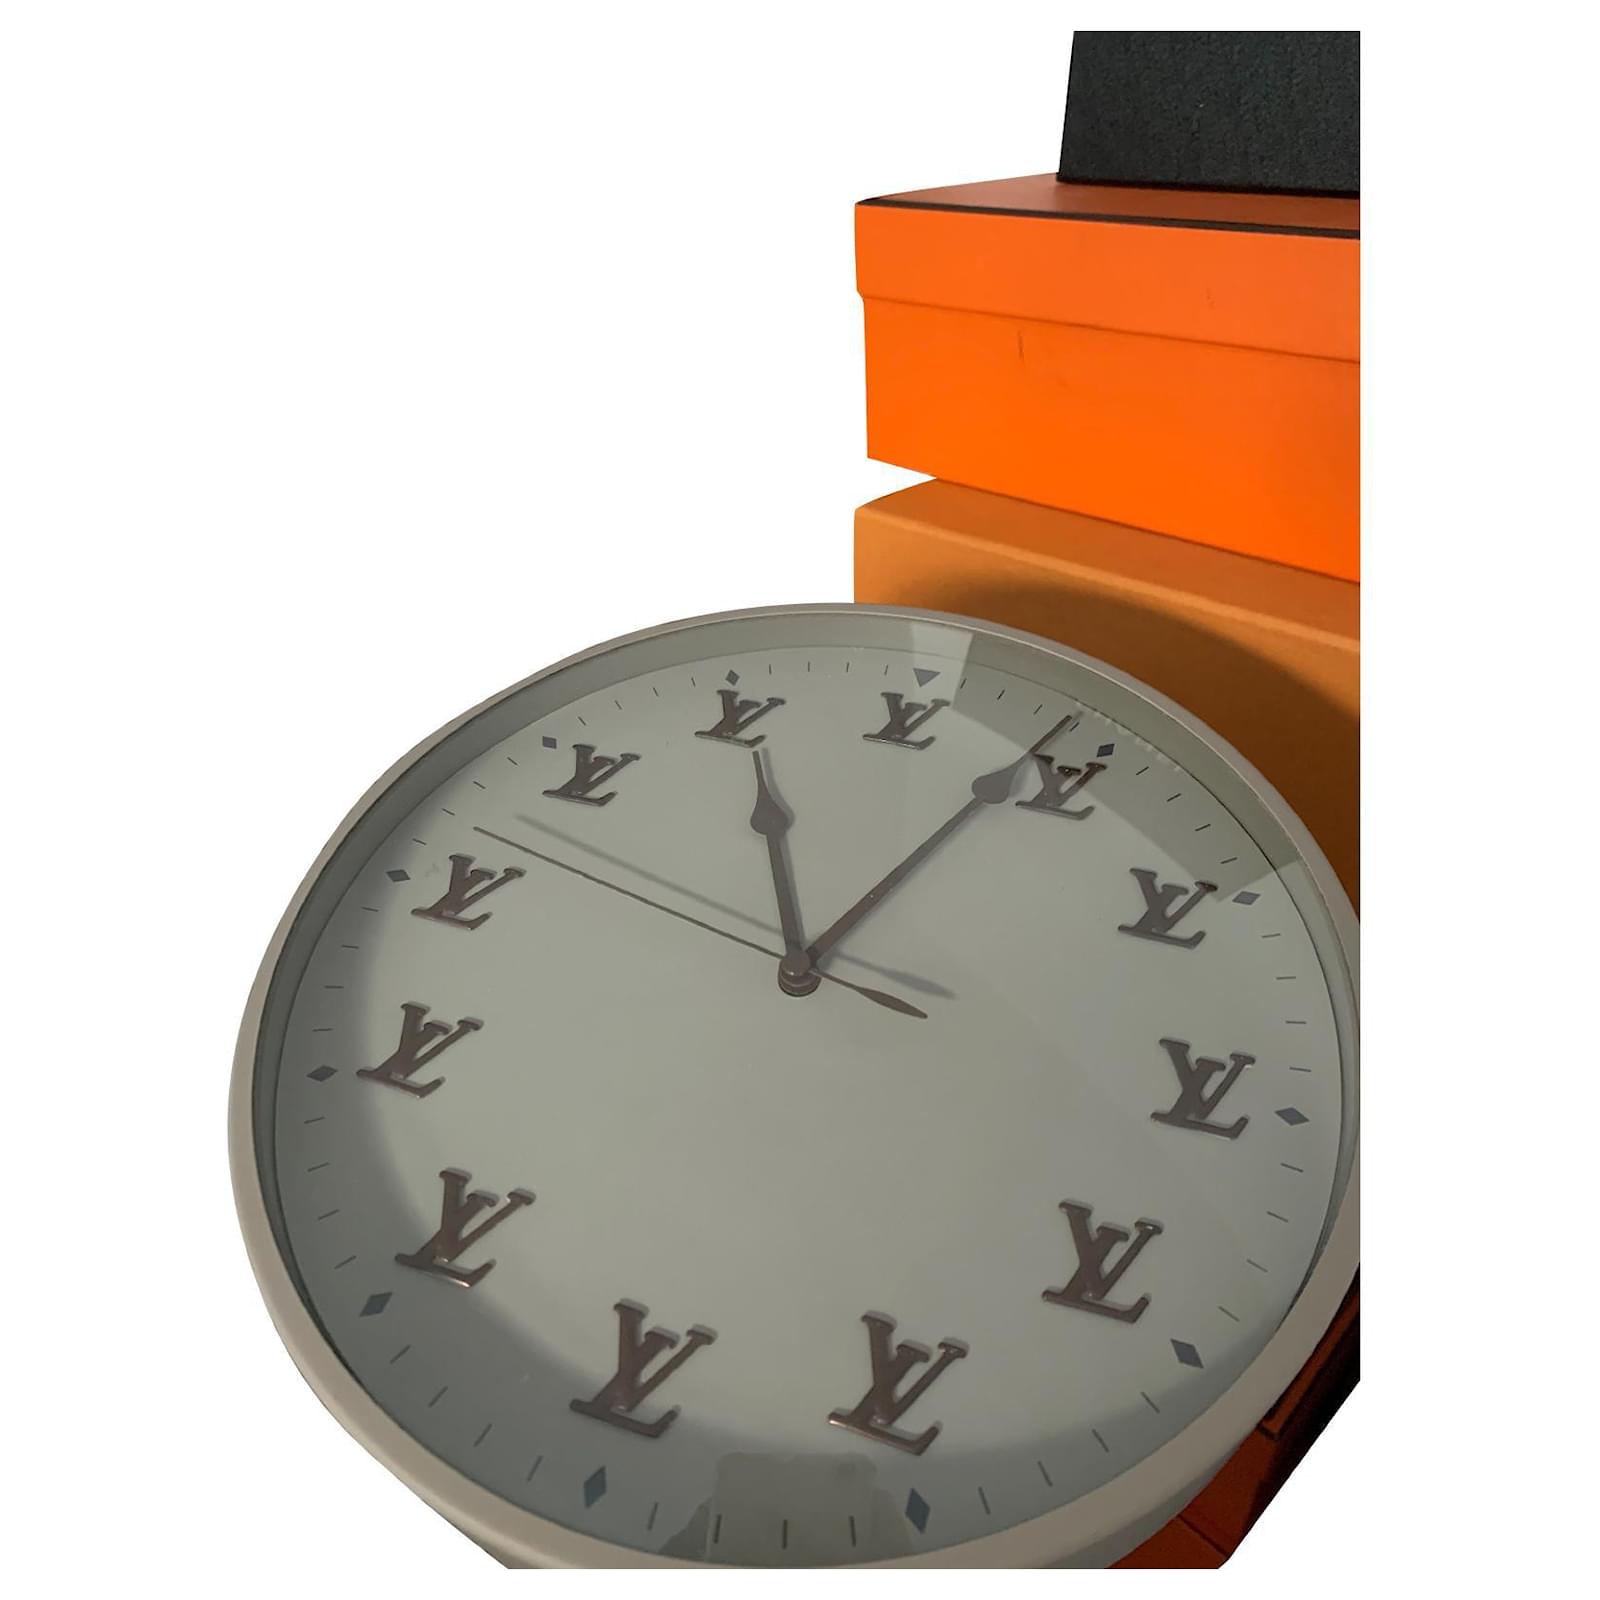 NEW FW20 Louis Vuitton Virgil Abloh LV Monogram Clock Limited